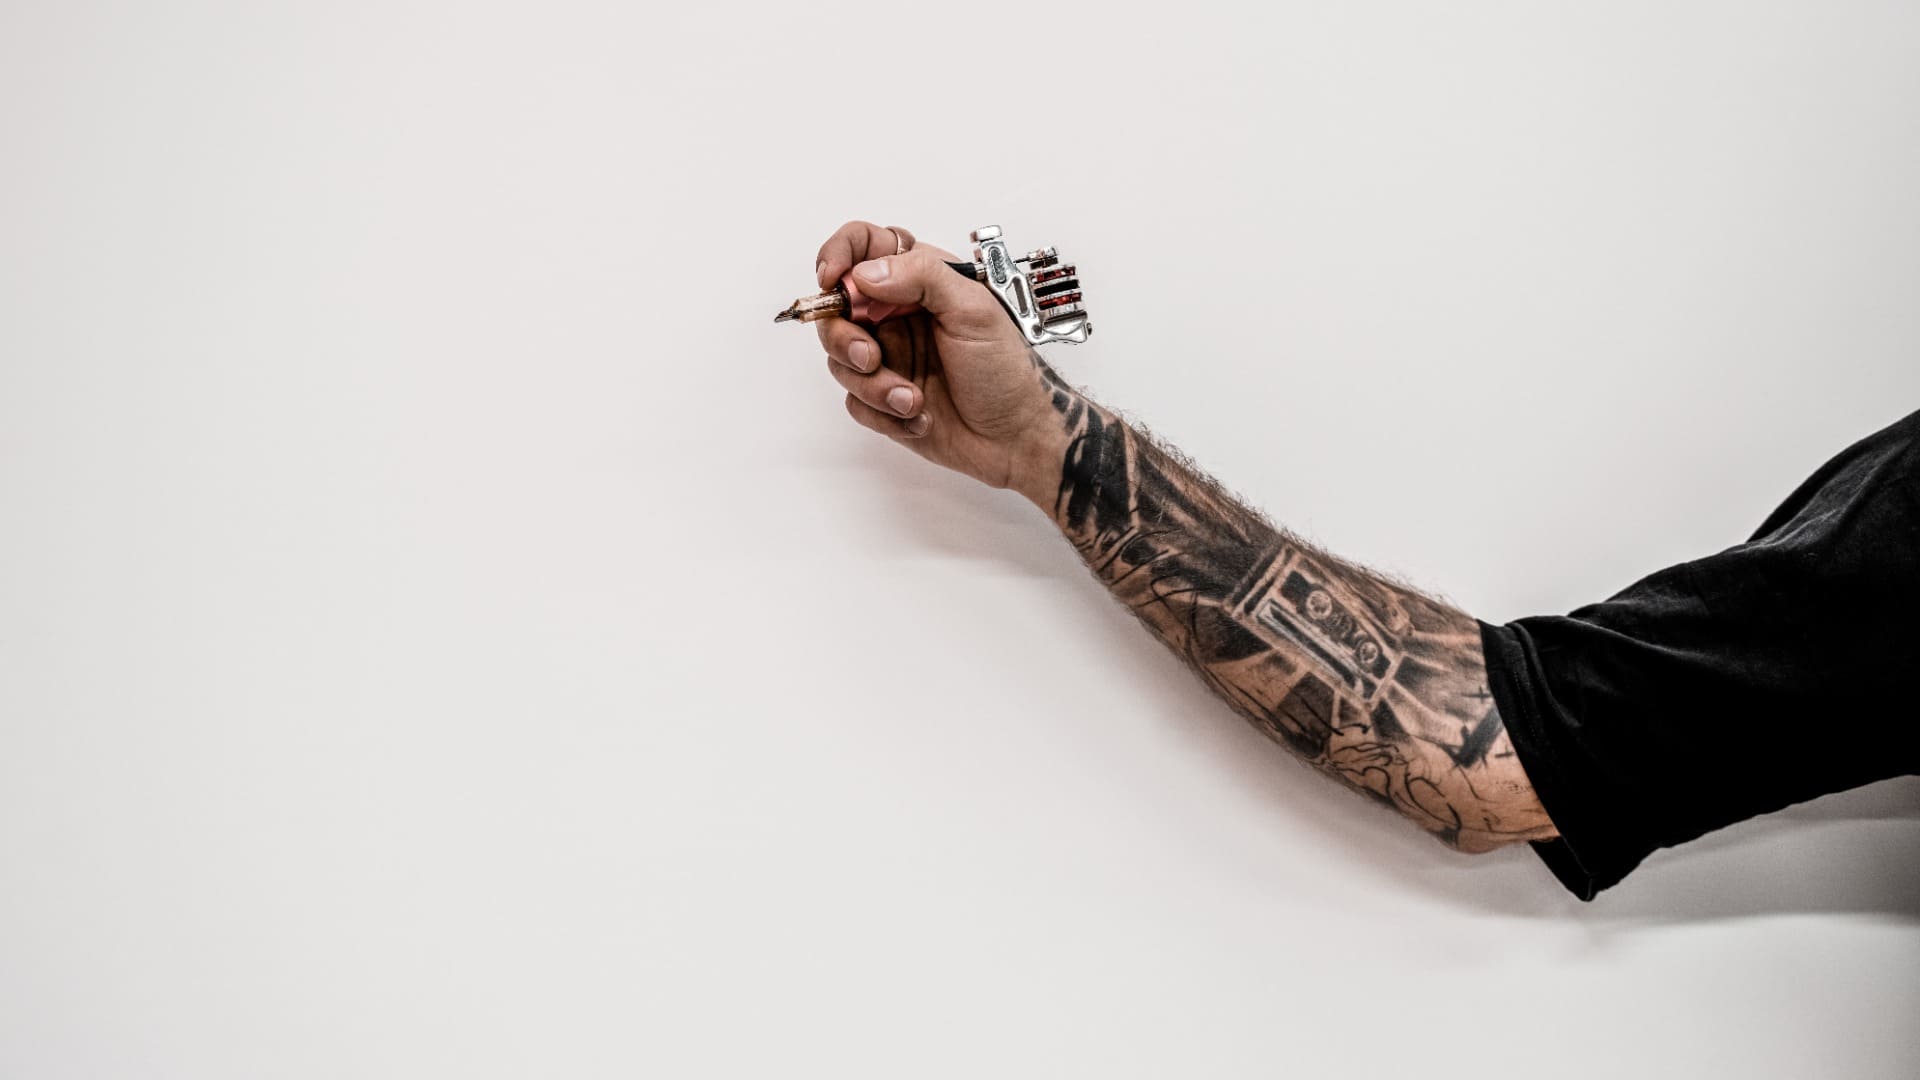 Primer plano de la mano del artista del tatuaje hipster anticuado que sostiene la máquina del tatuaje sobre un fondo blanco